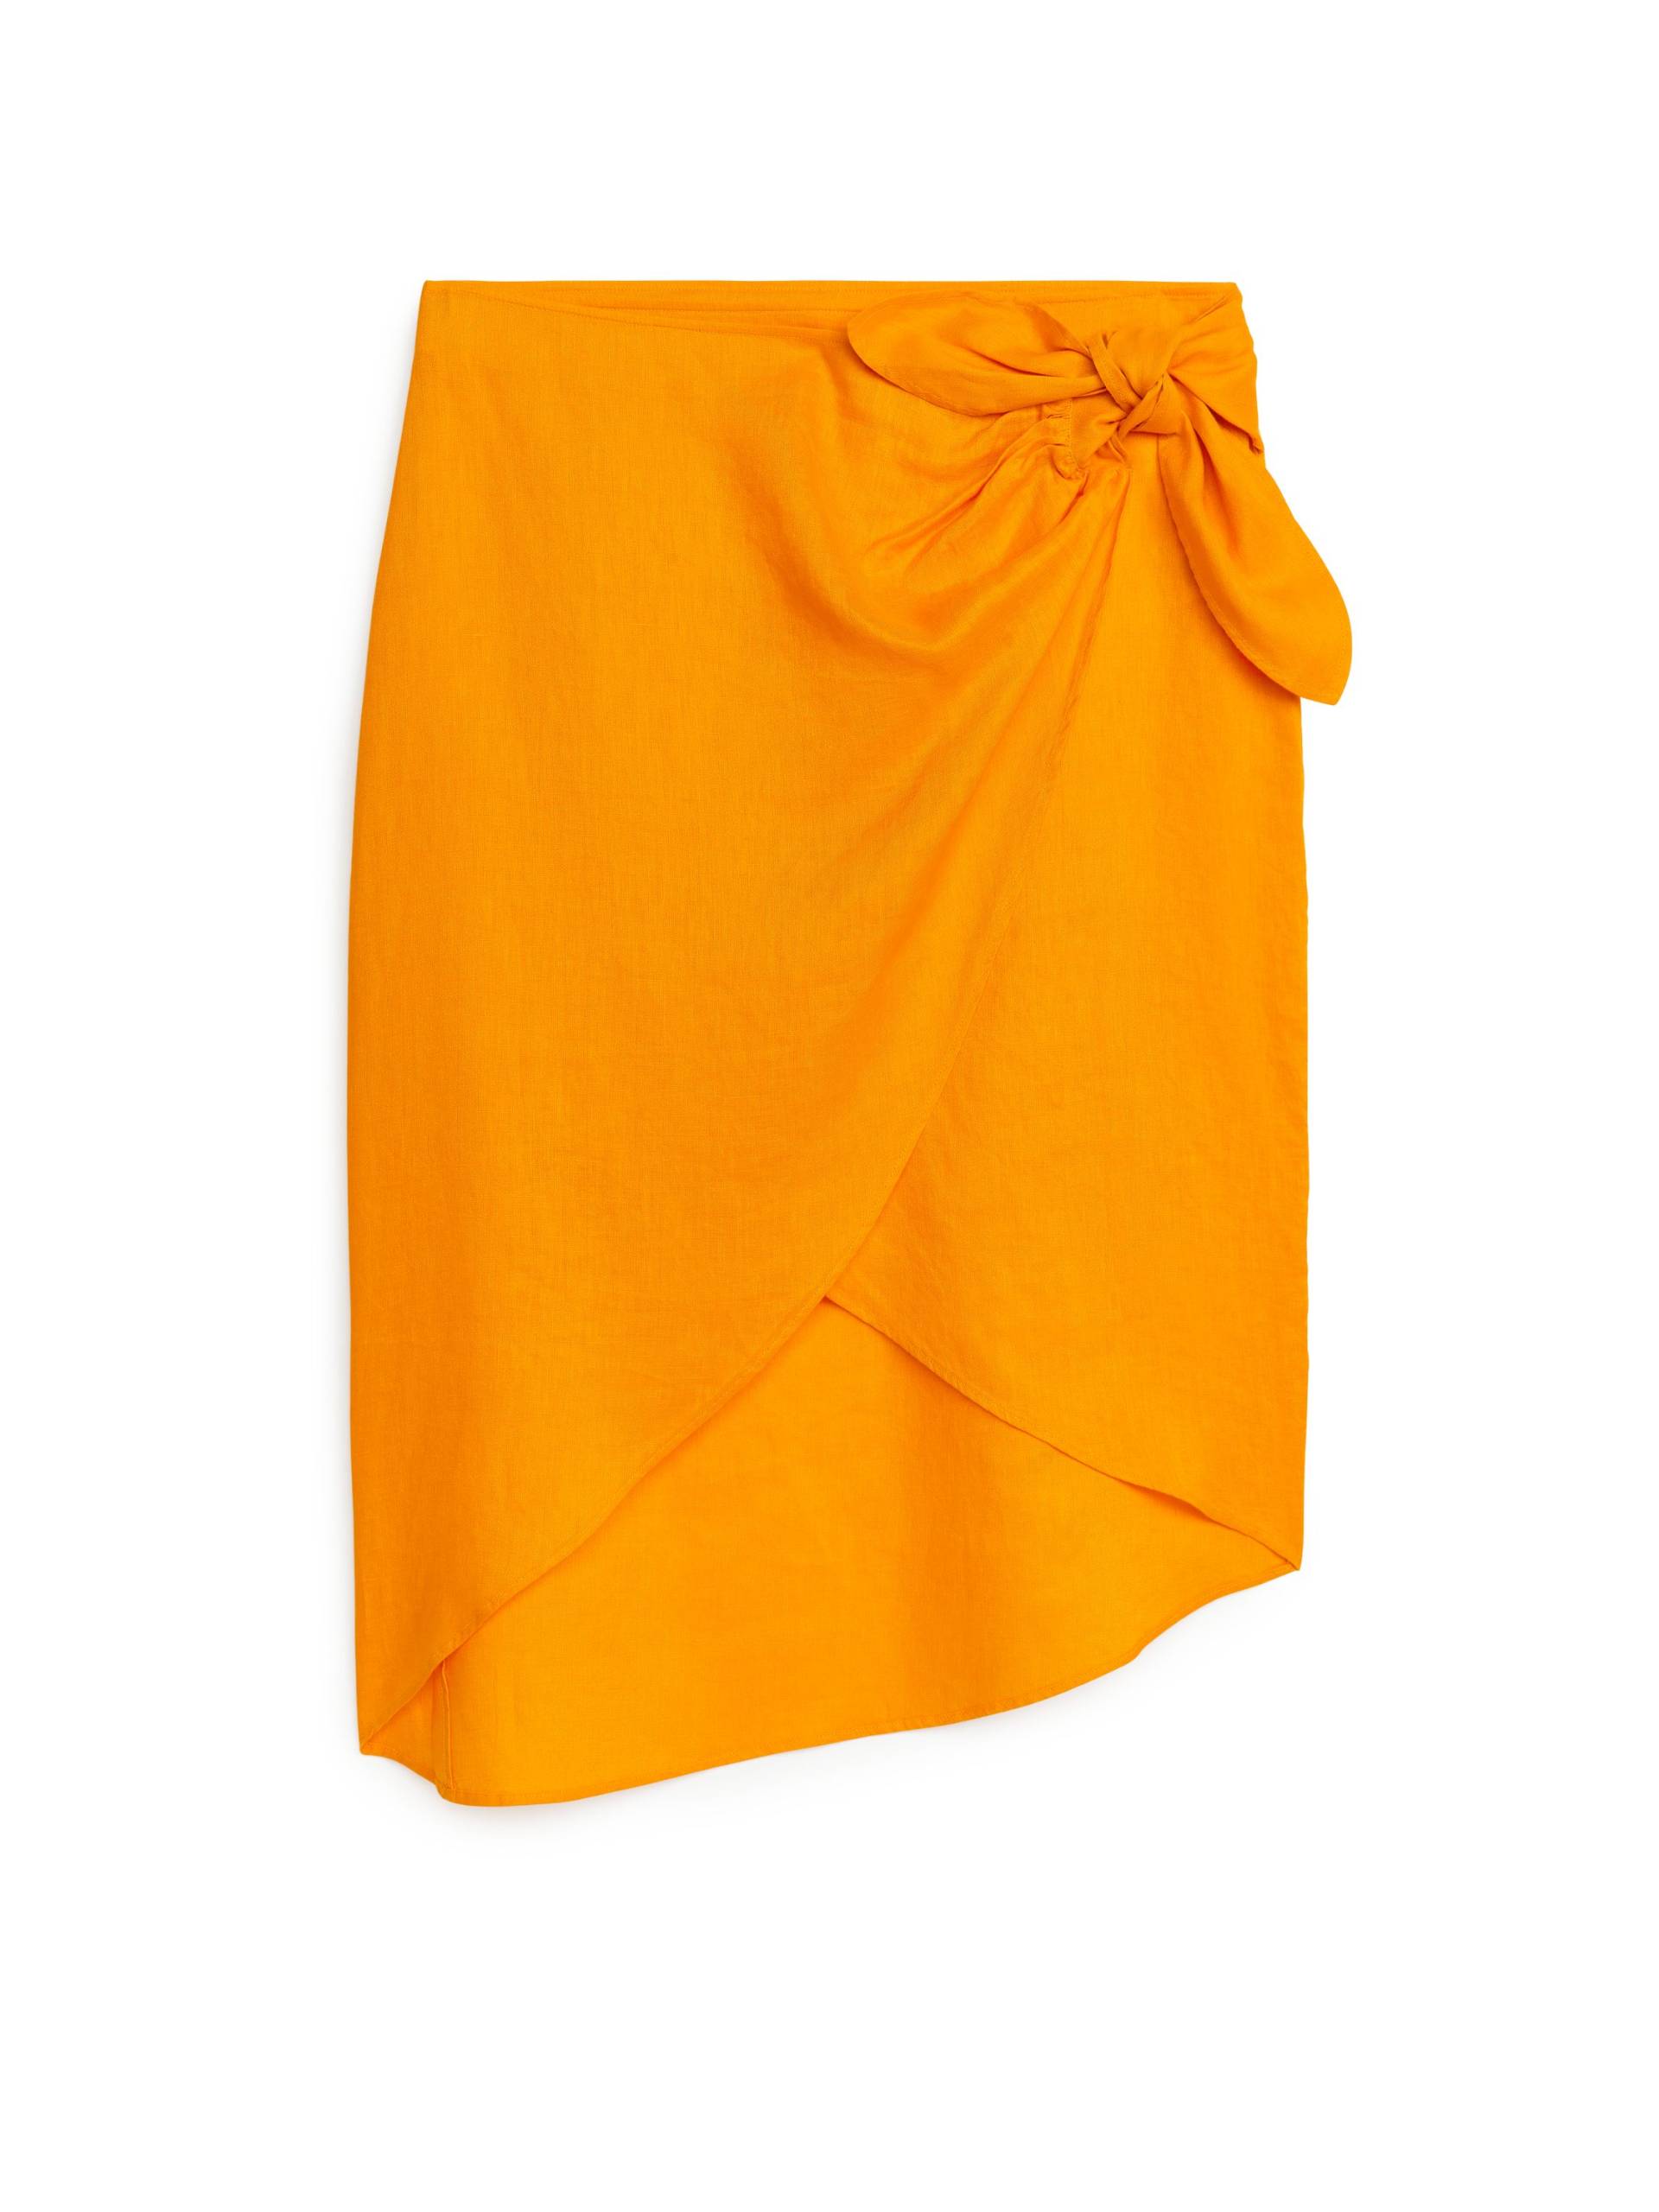 Arket Wickelrock aus Leinen Gelb, Röcke in Größe L. Farbe: Yellow von Arket